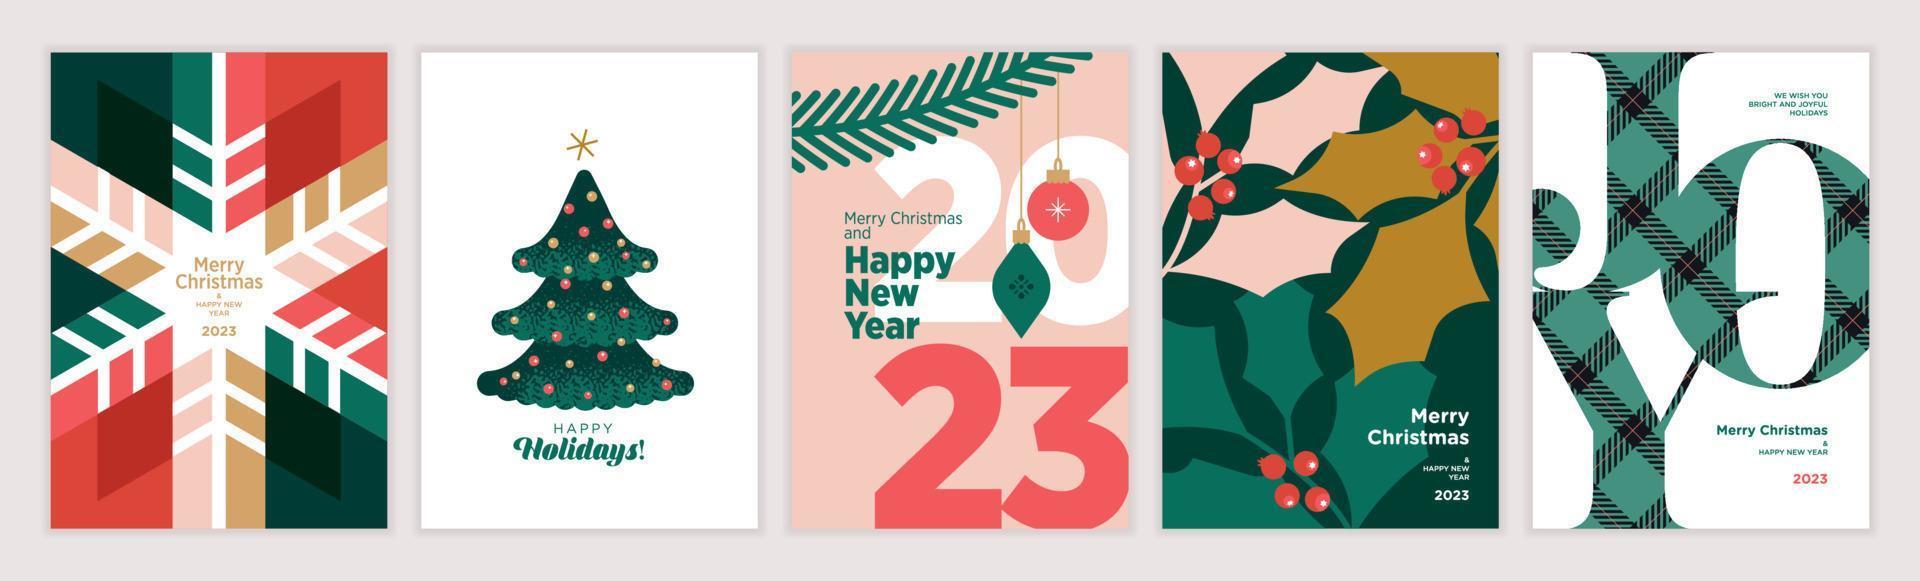 conjunto de cartões de natal e ano novo 2023. conceitos de ilustração vetorial para design gráfico e web, banner de mídia social, material de marketing. vetor